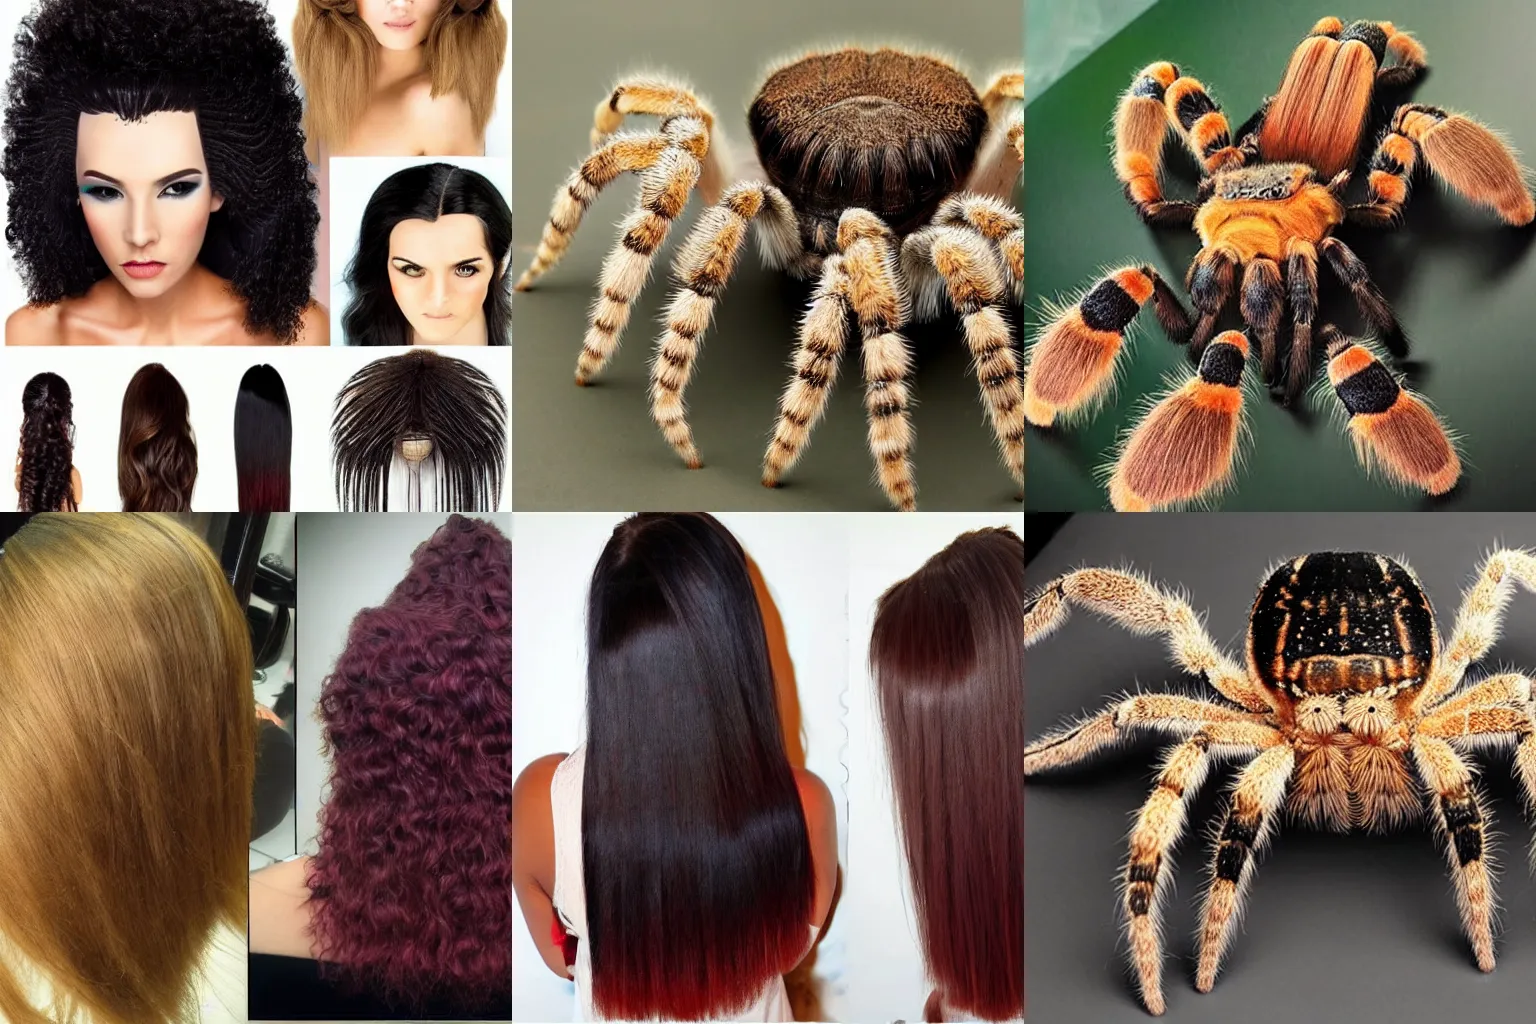 Prompt: tarantulas for hair